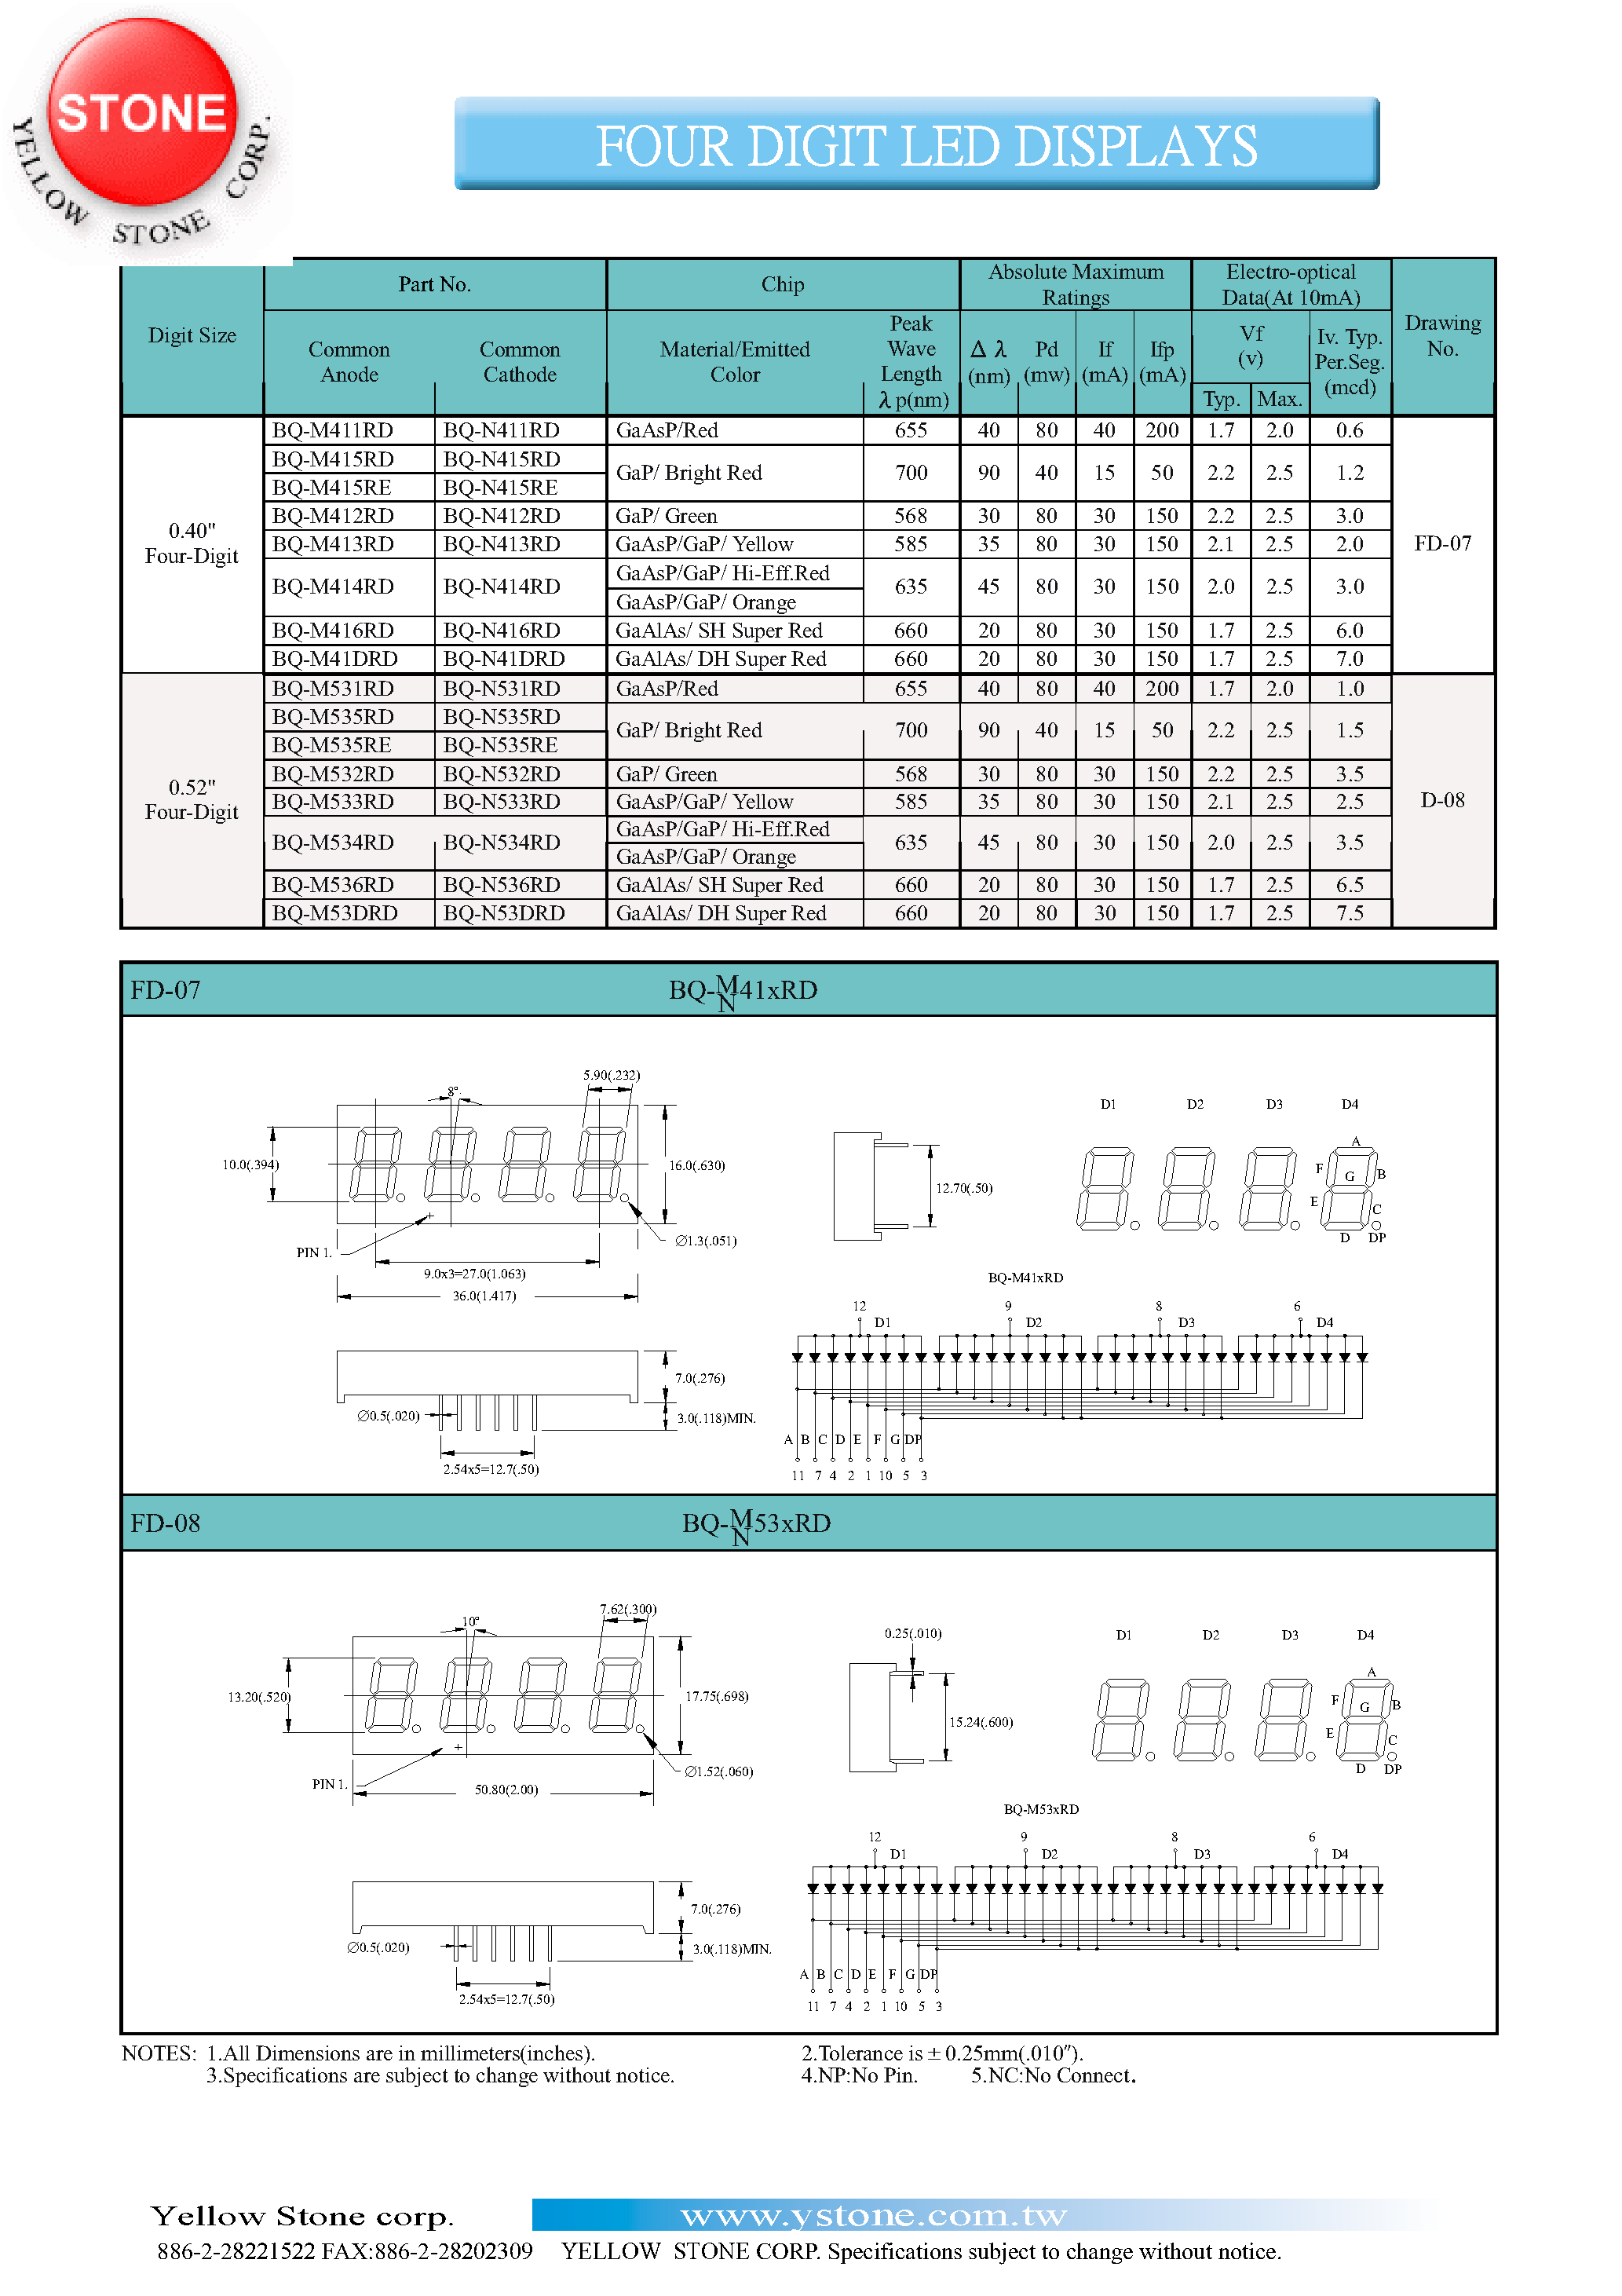 Datasheet BQ-M413RD - FOUR DIGIT LED DISPLAYS page 1